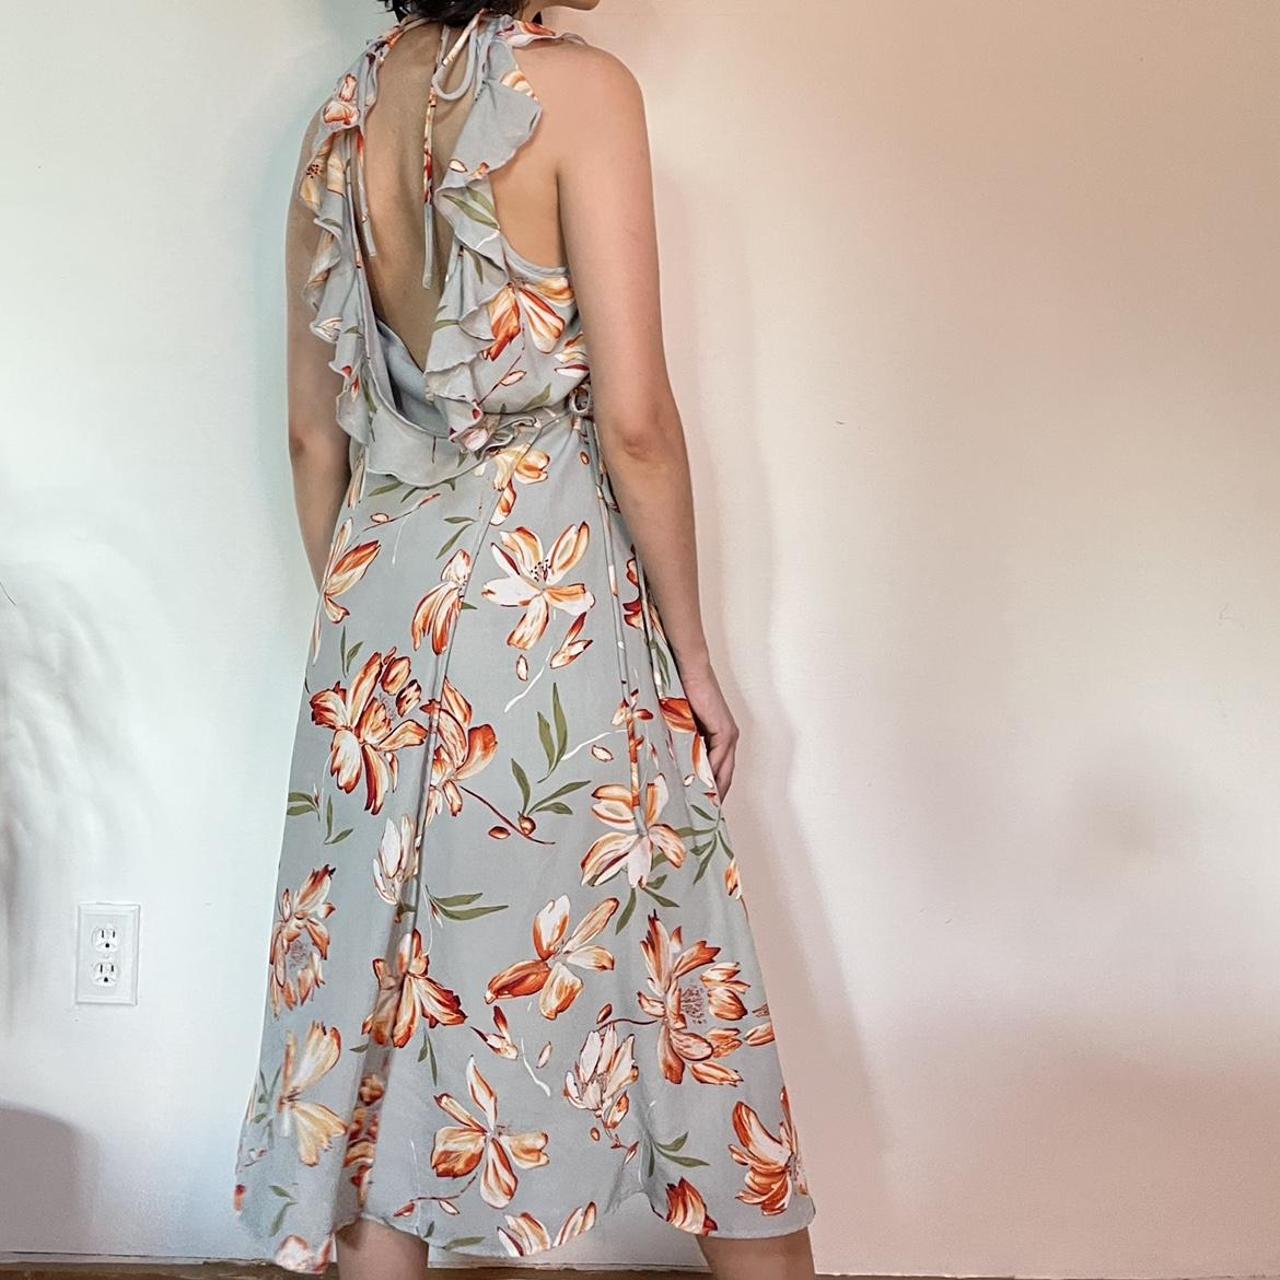 Product Image 2 - #rokoko #floralprint dress #floral with